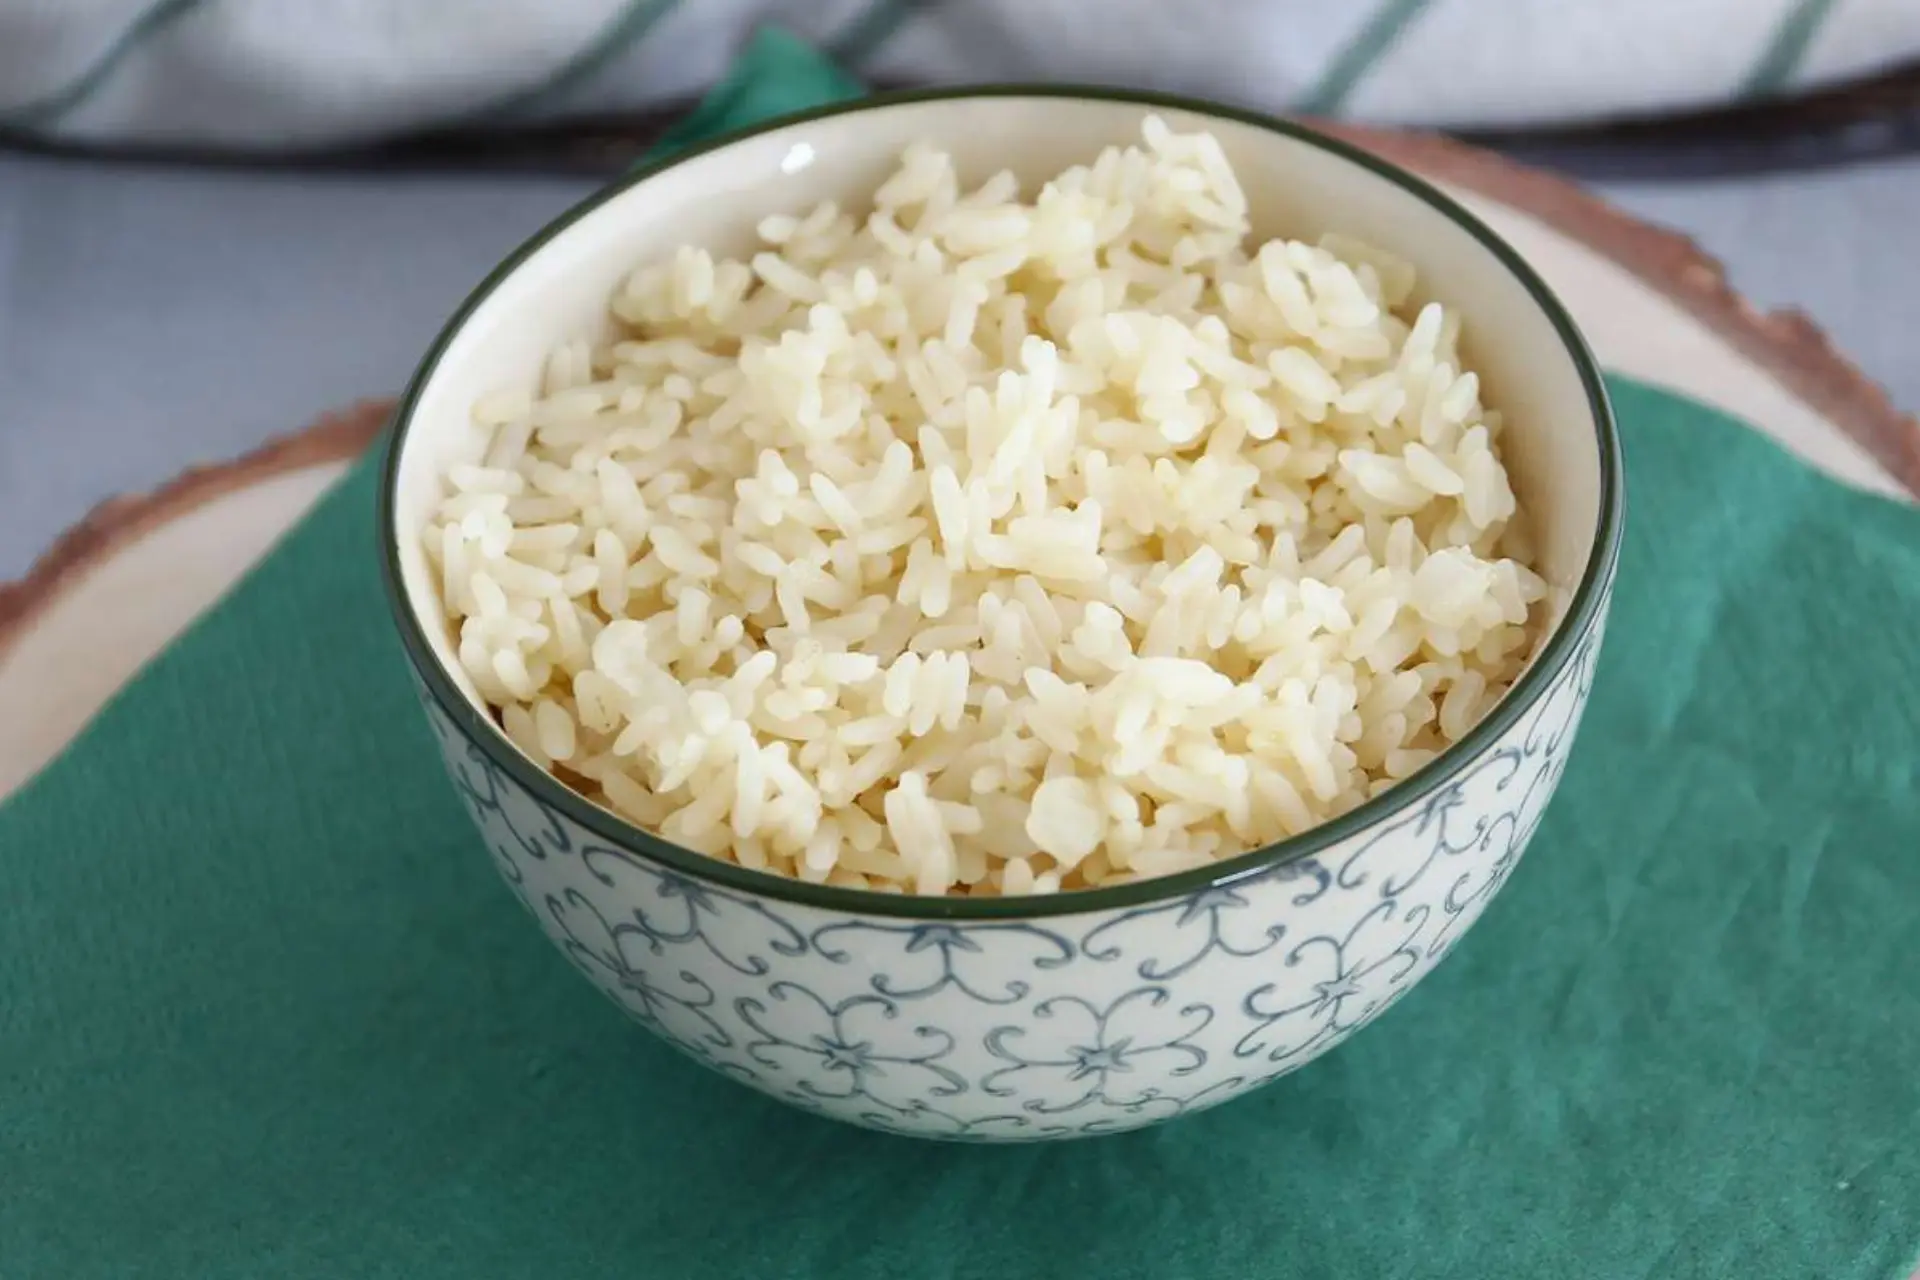 arroz jasmim servido em vasilha branca